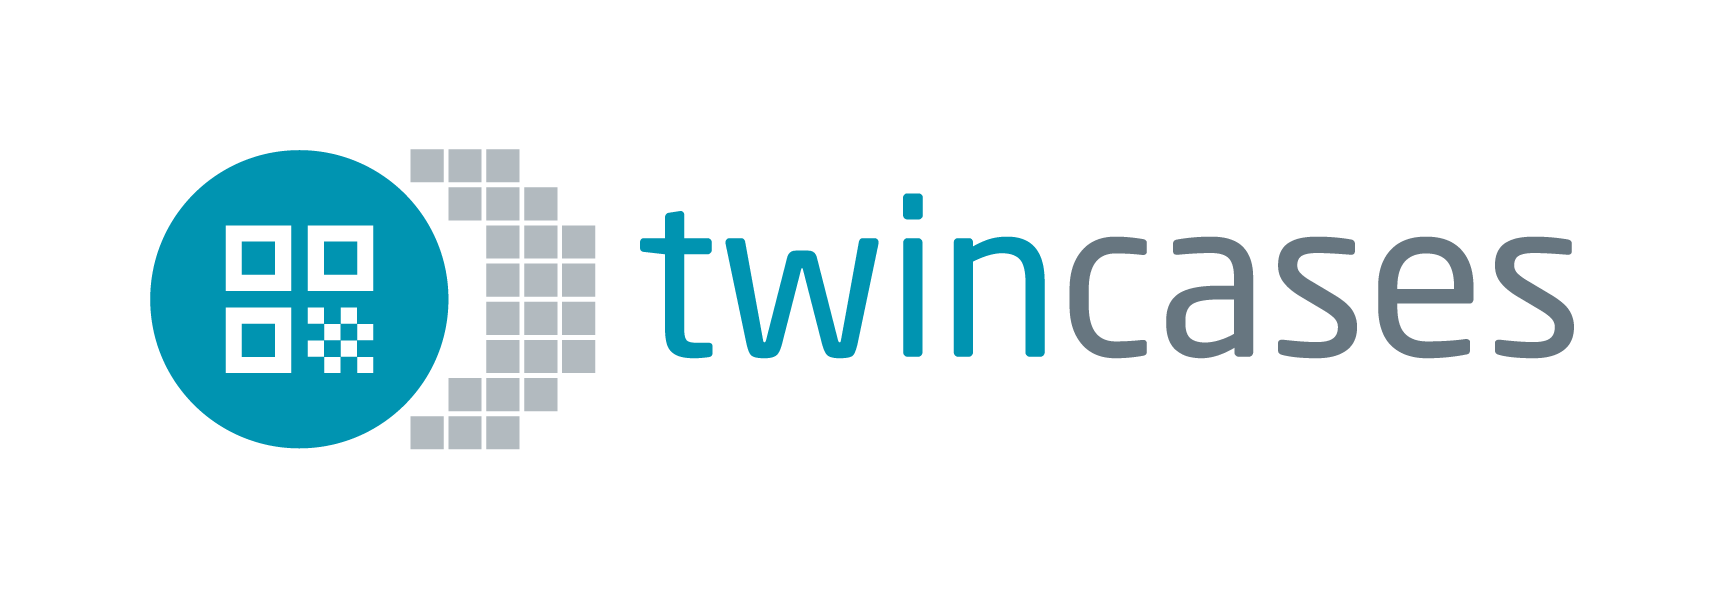 twincases-logo